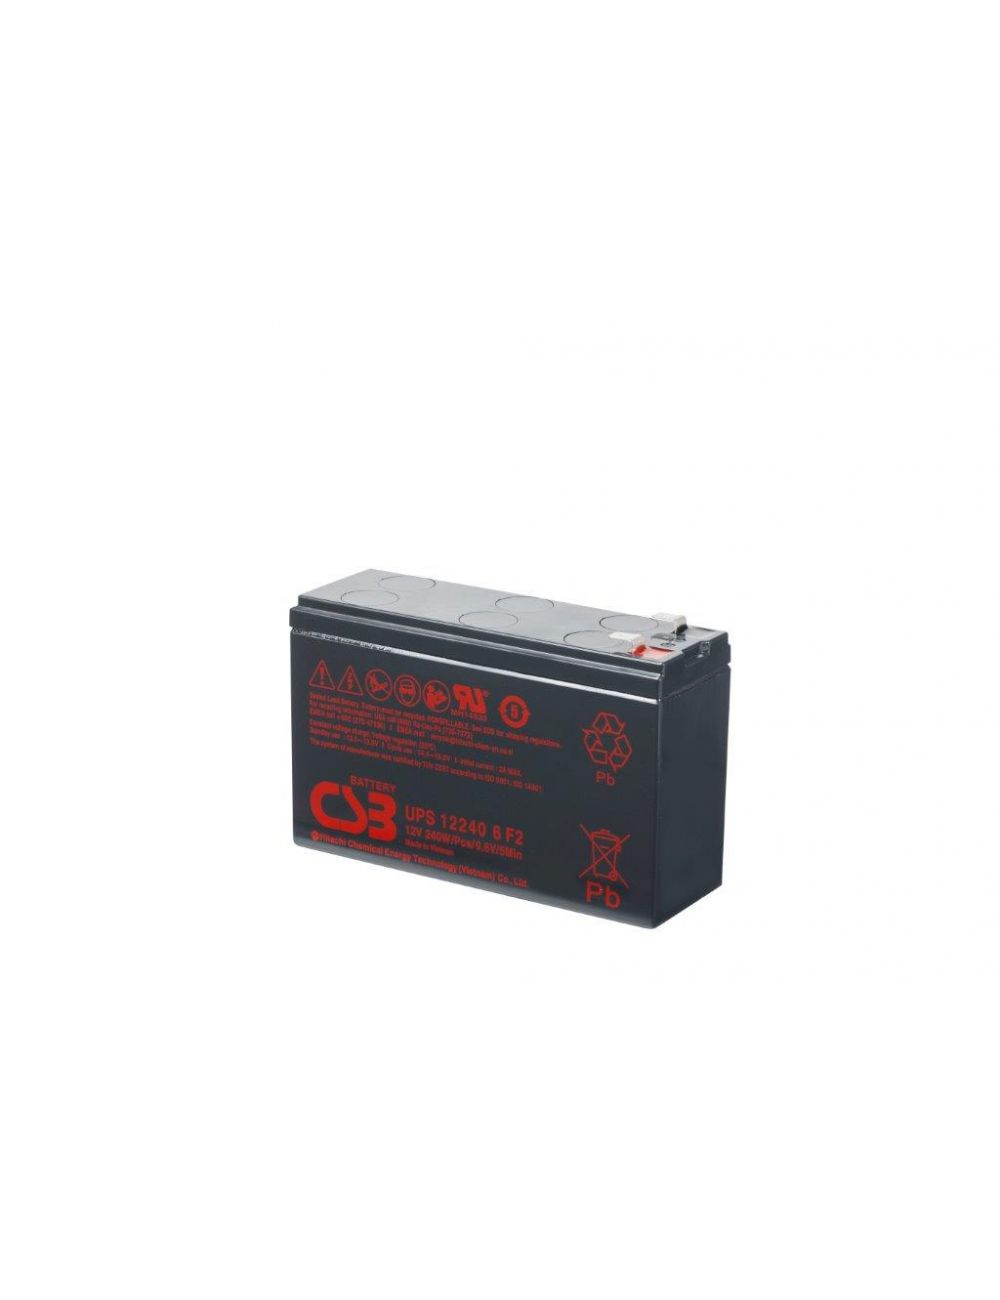 Bateria para SAI 12V 6,5Ah 240W CSB serie UPS - CSB-UPS122406 -  -  - 1